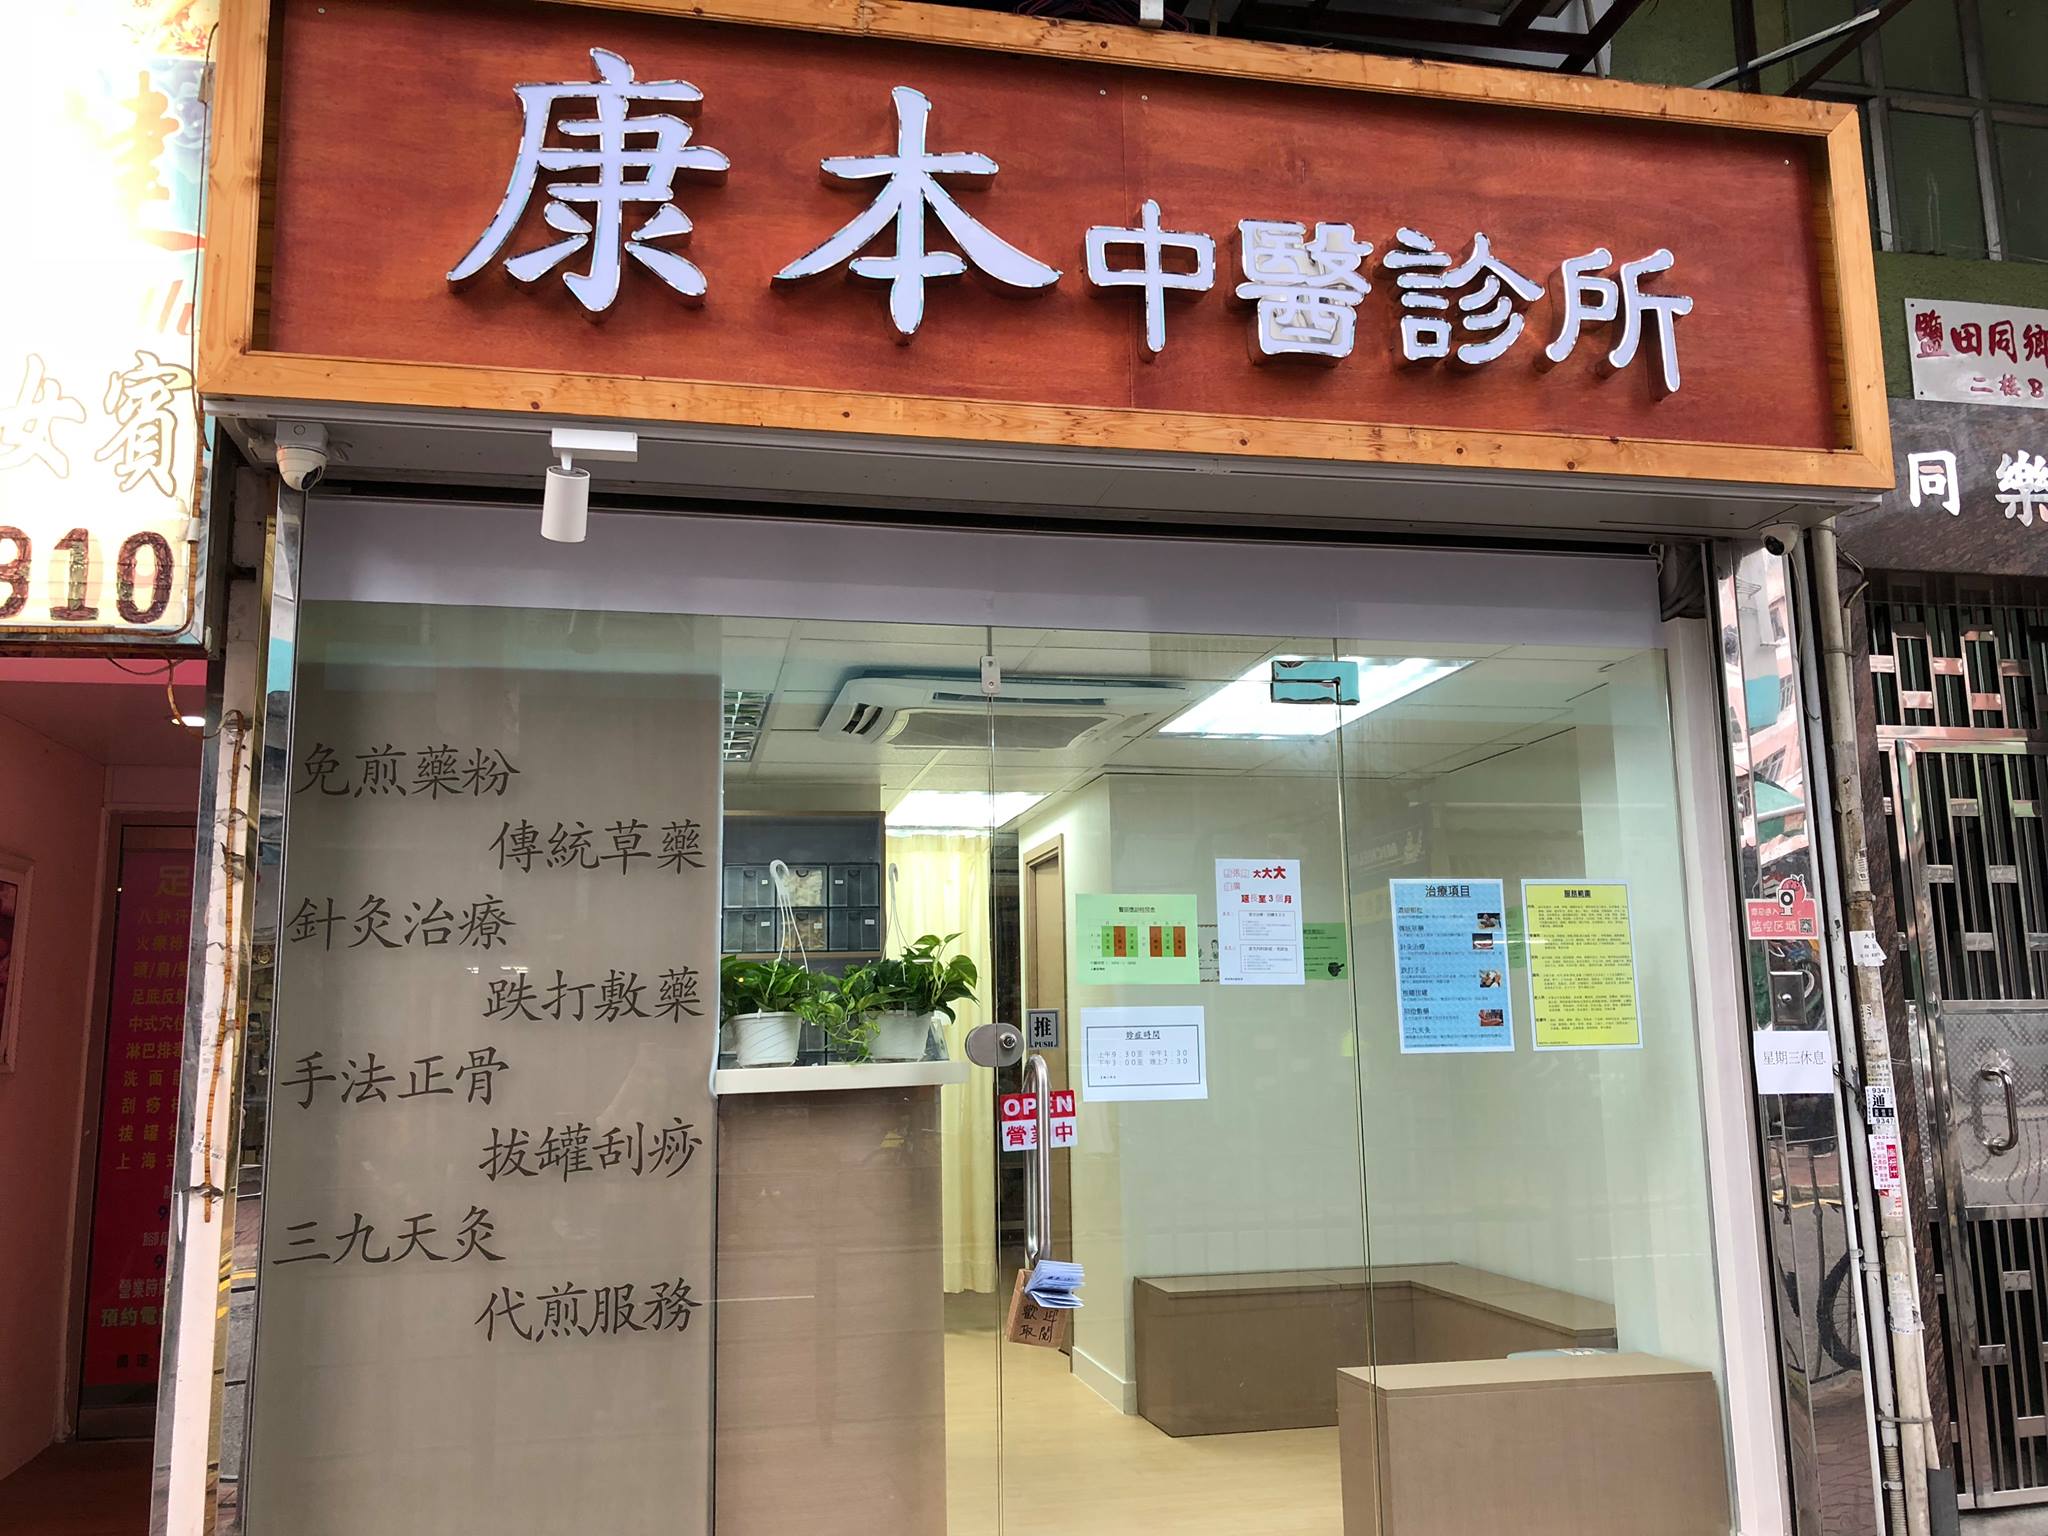 中醫診所: 康本中醫診所